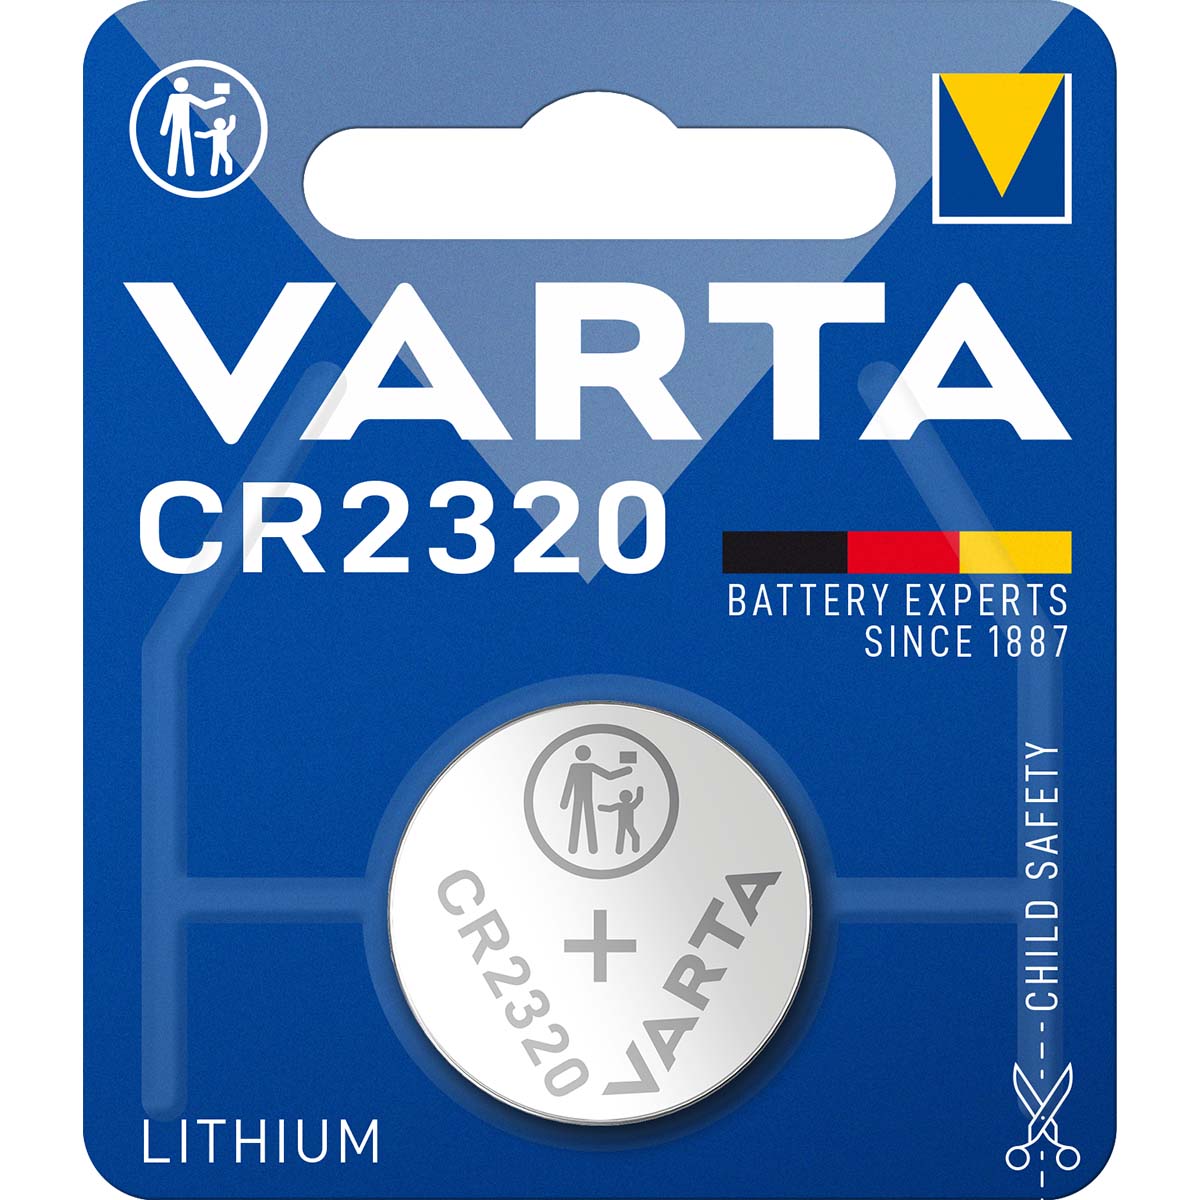 3 x Varta CR 2320 3V Lithium Batterie Knopfzelle 135mAh 6320 im Blister 